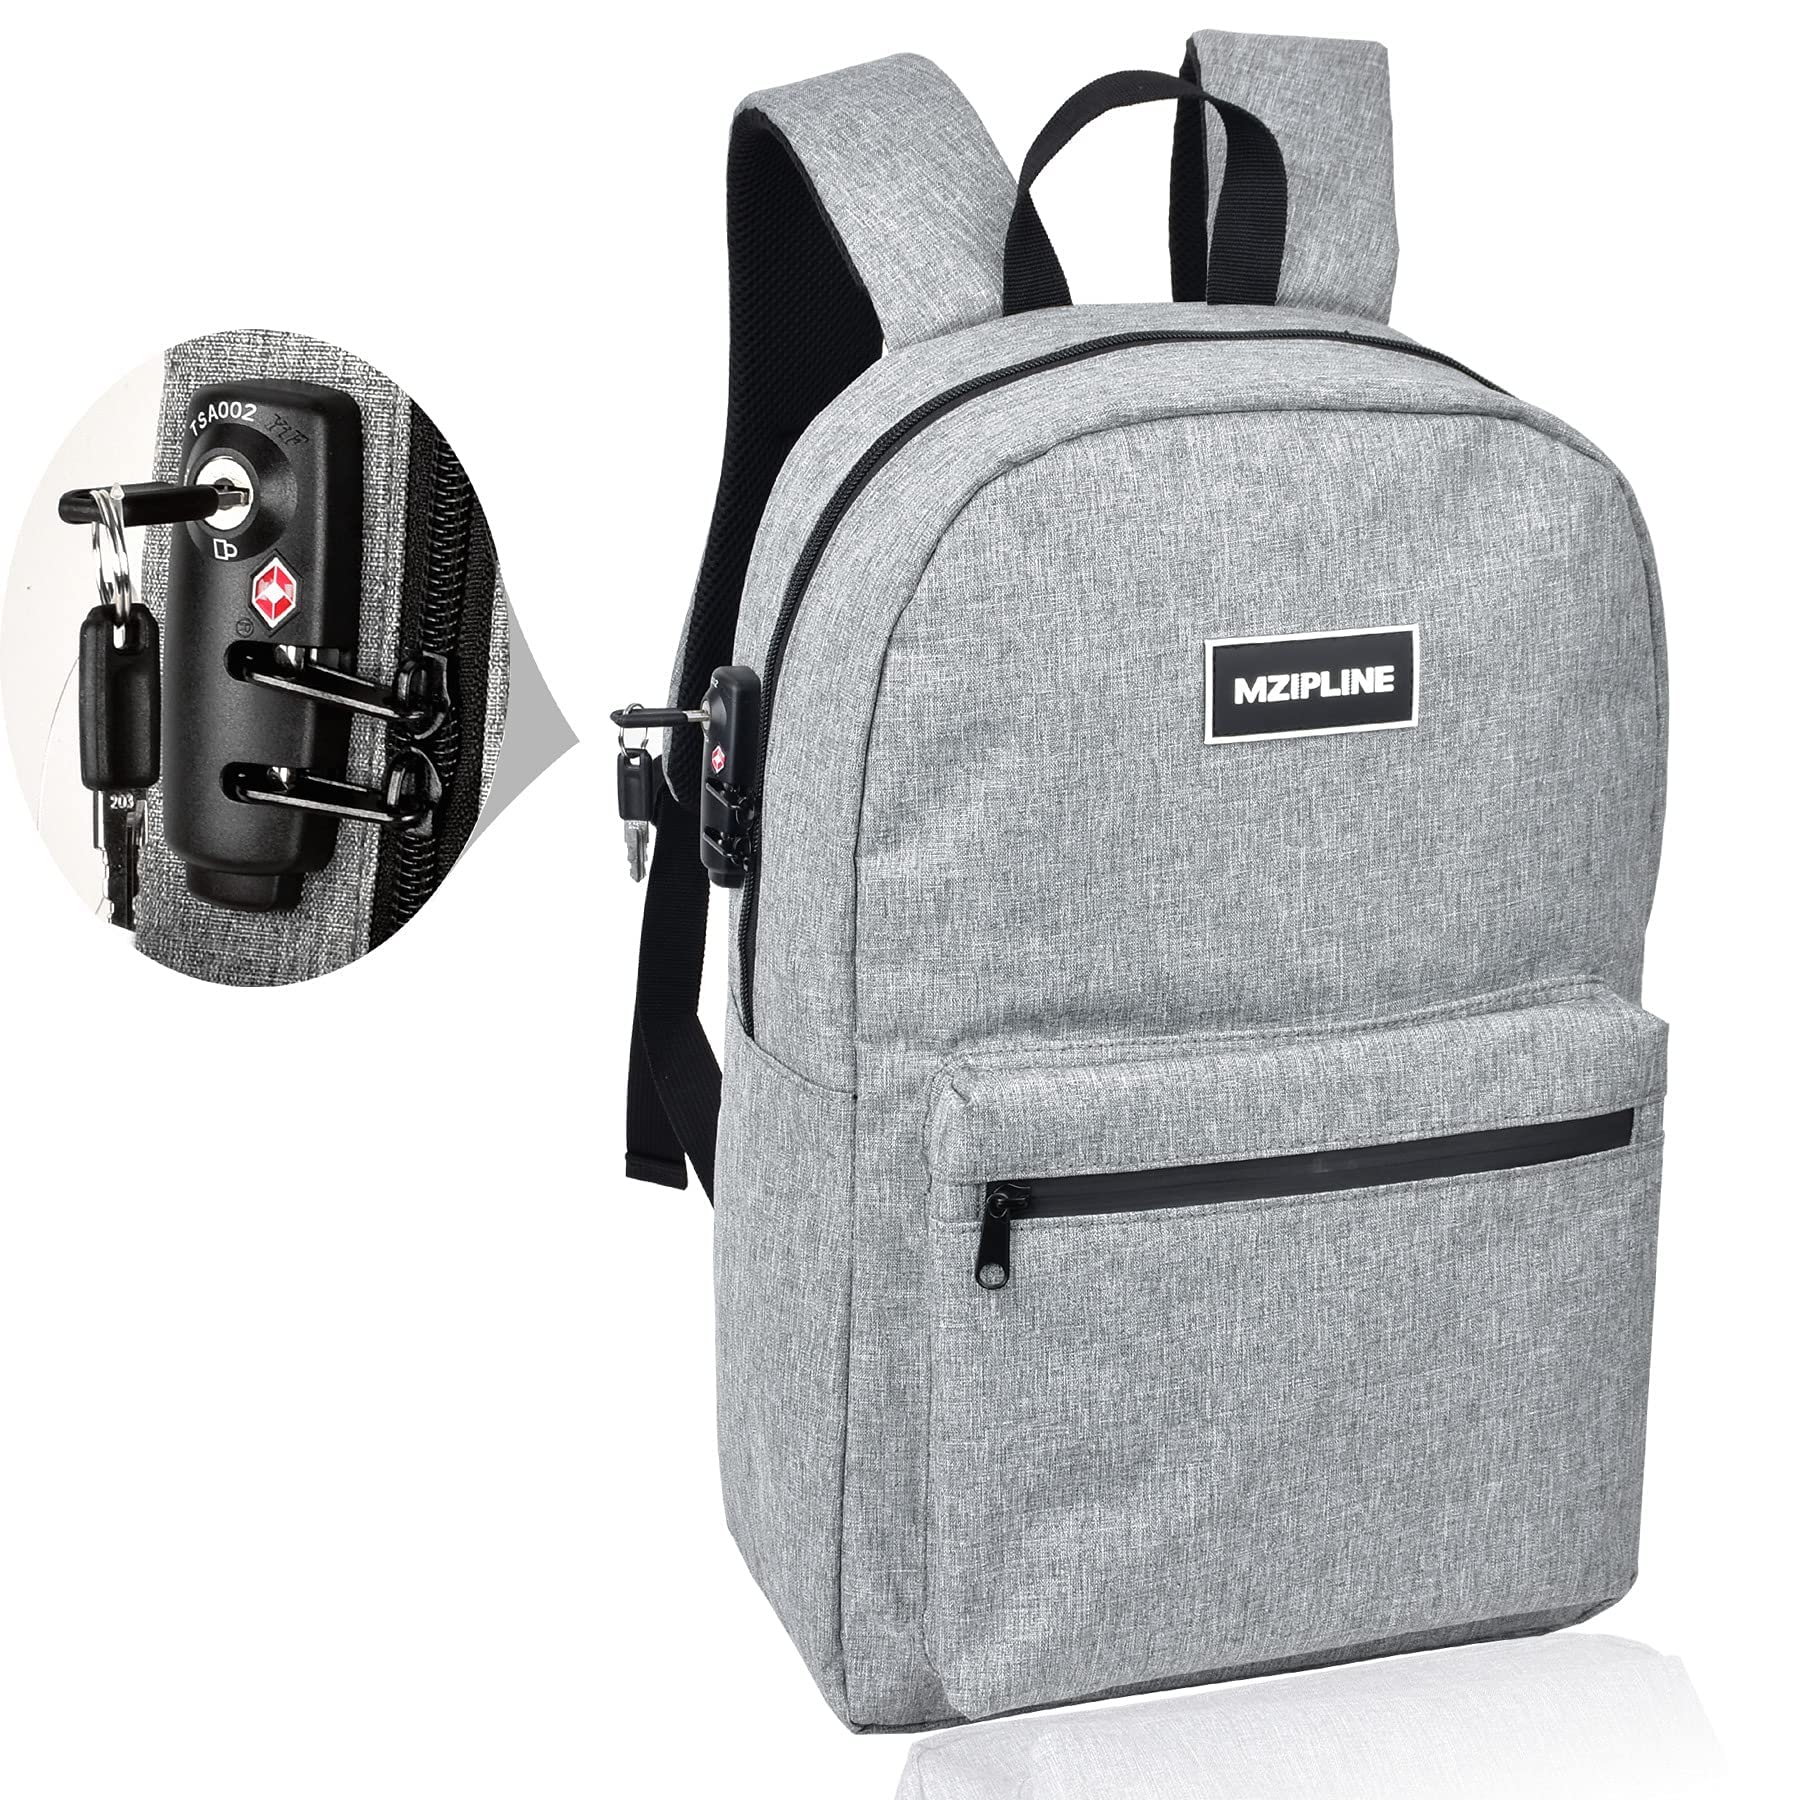 送料無料MZIPLINE Backpack Bag With TSA Lock Key Resistant Laptop Daypack for Men Women Travel Grey並行輸入品